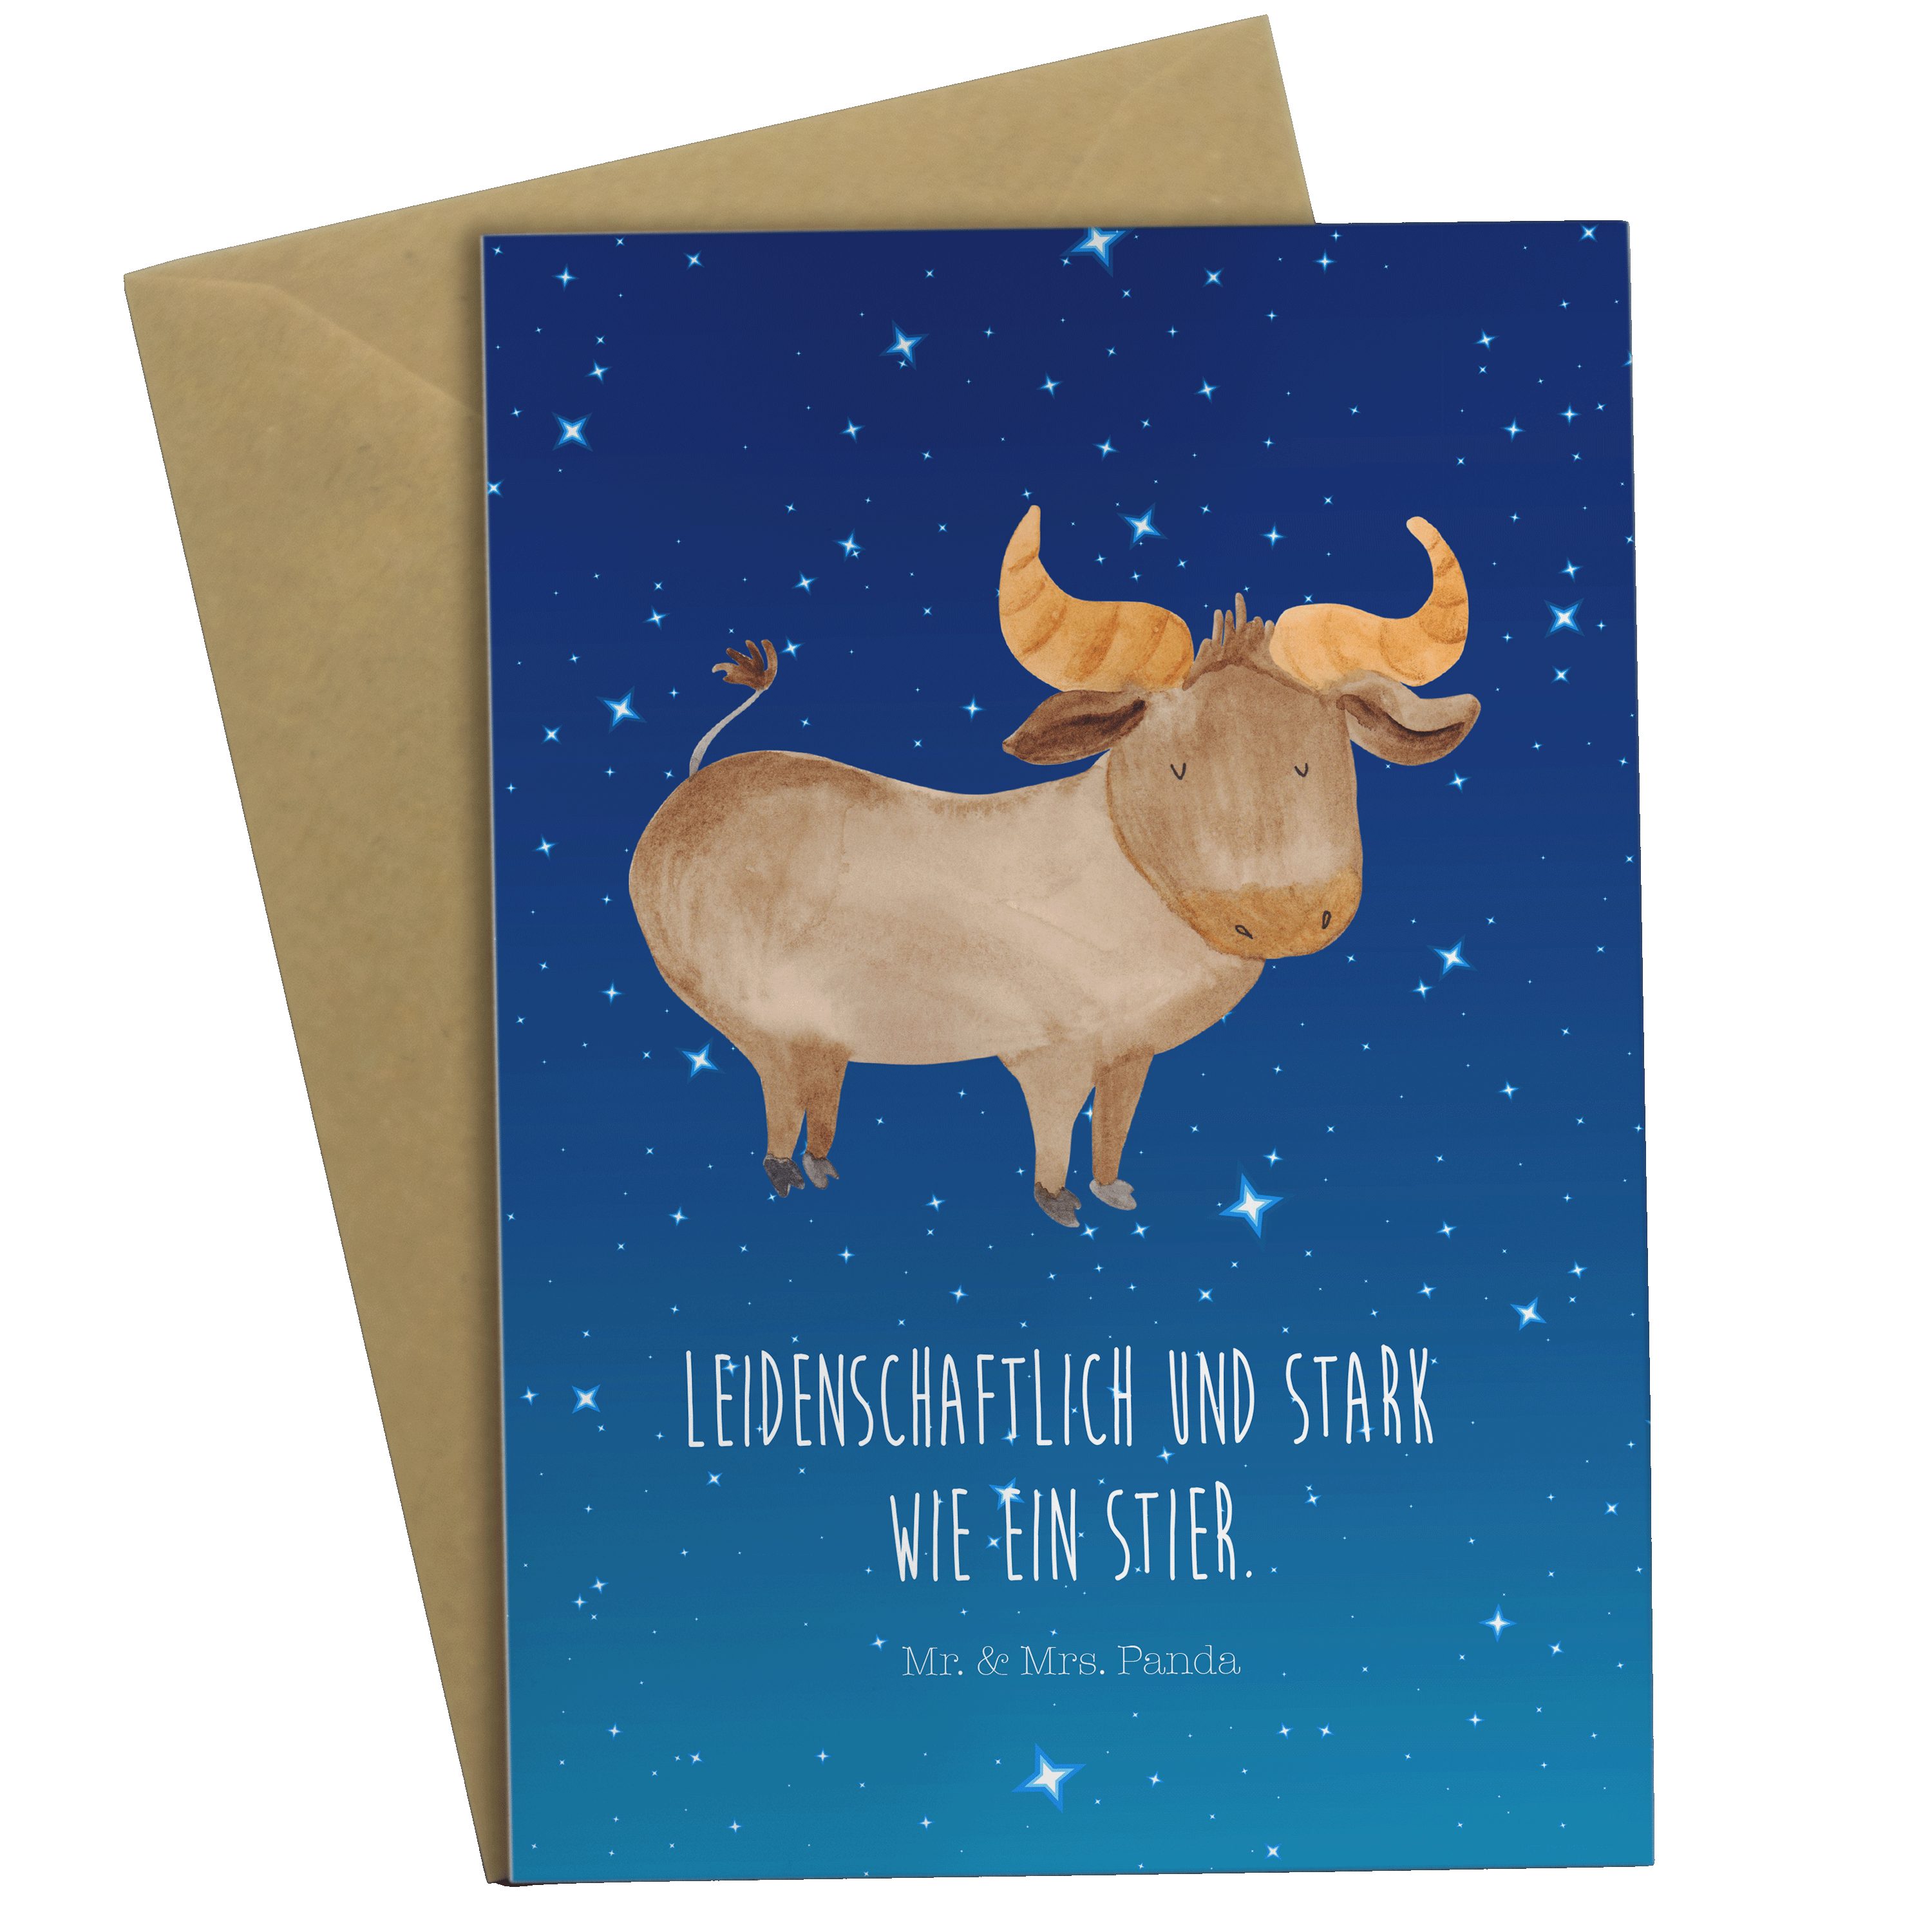 Mr. & Mrs. Panda Grußkarte Sternzeichen Stier - Sternenhimmel Blau - Geschenk, Aszendent, Hochze | Grußkarten